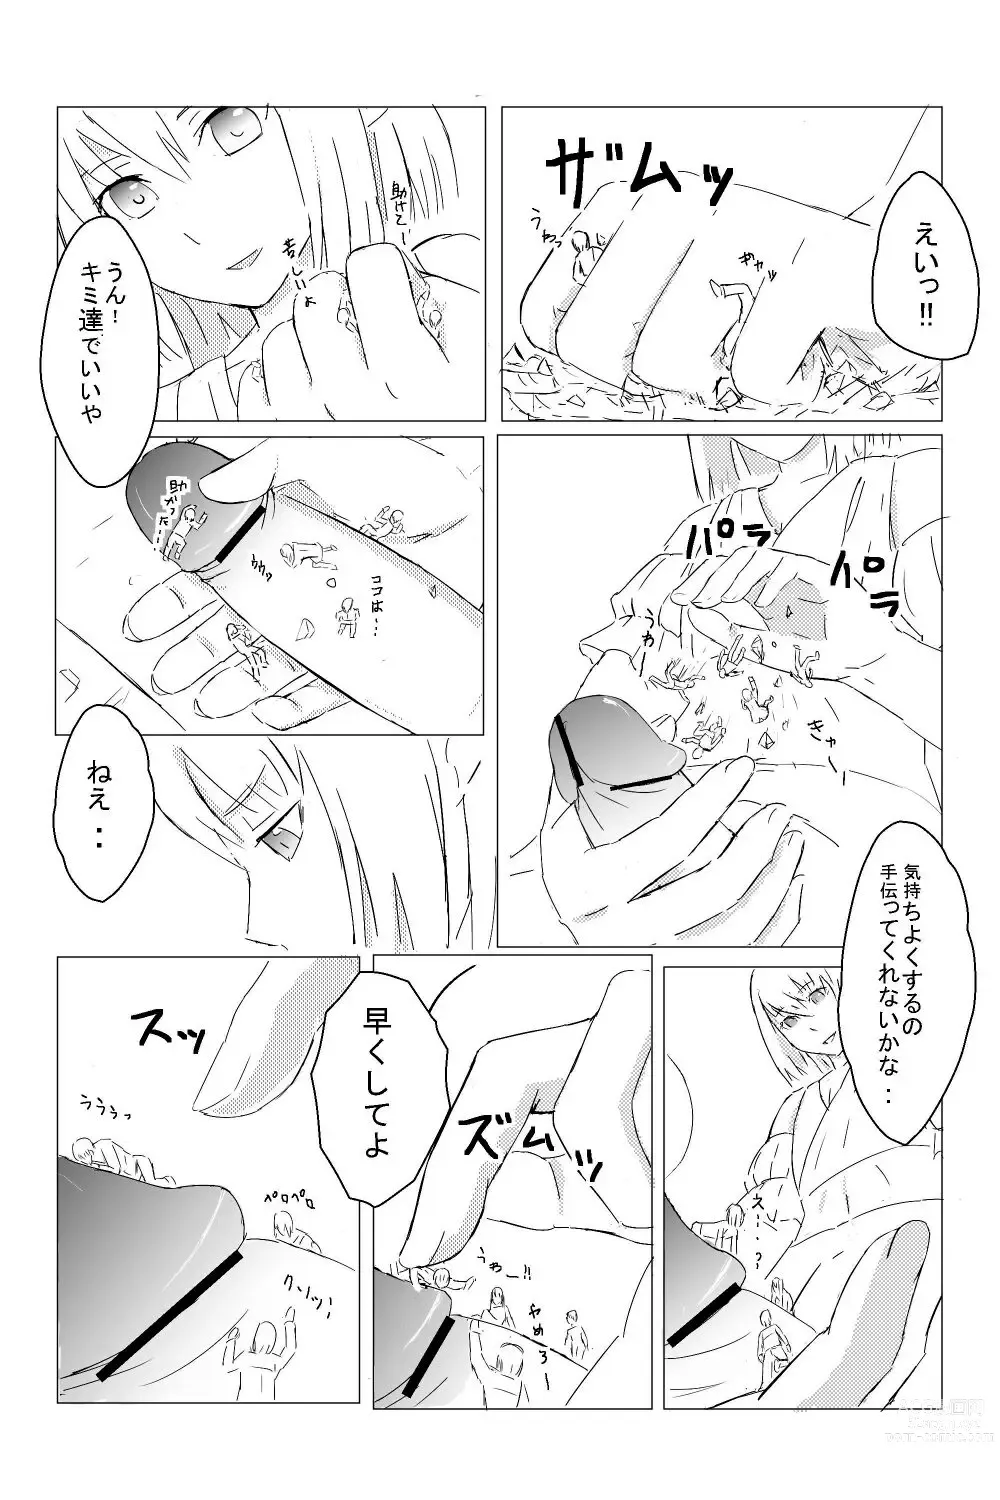 Page 4 of doujinshi Yoi Shumatsu O